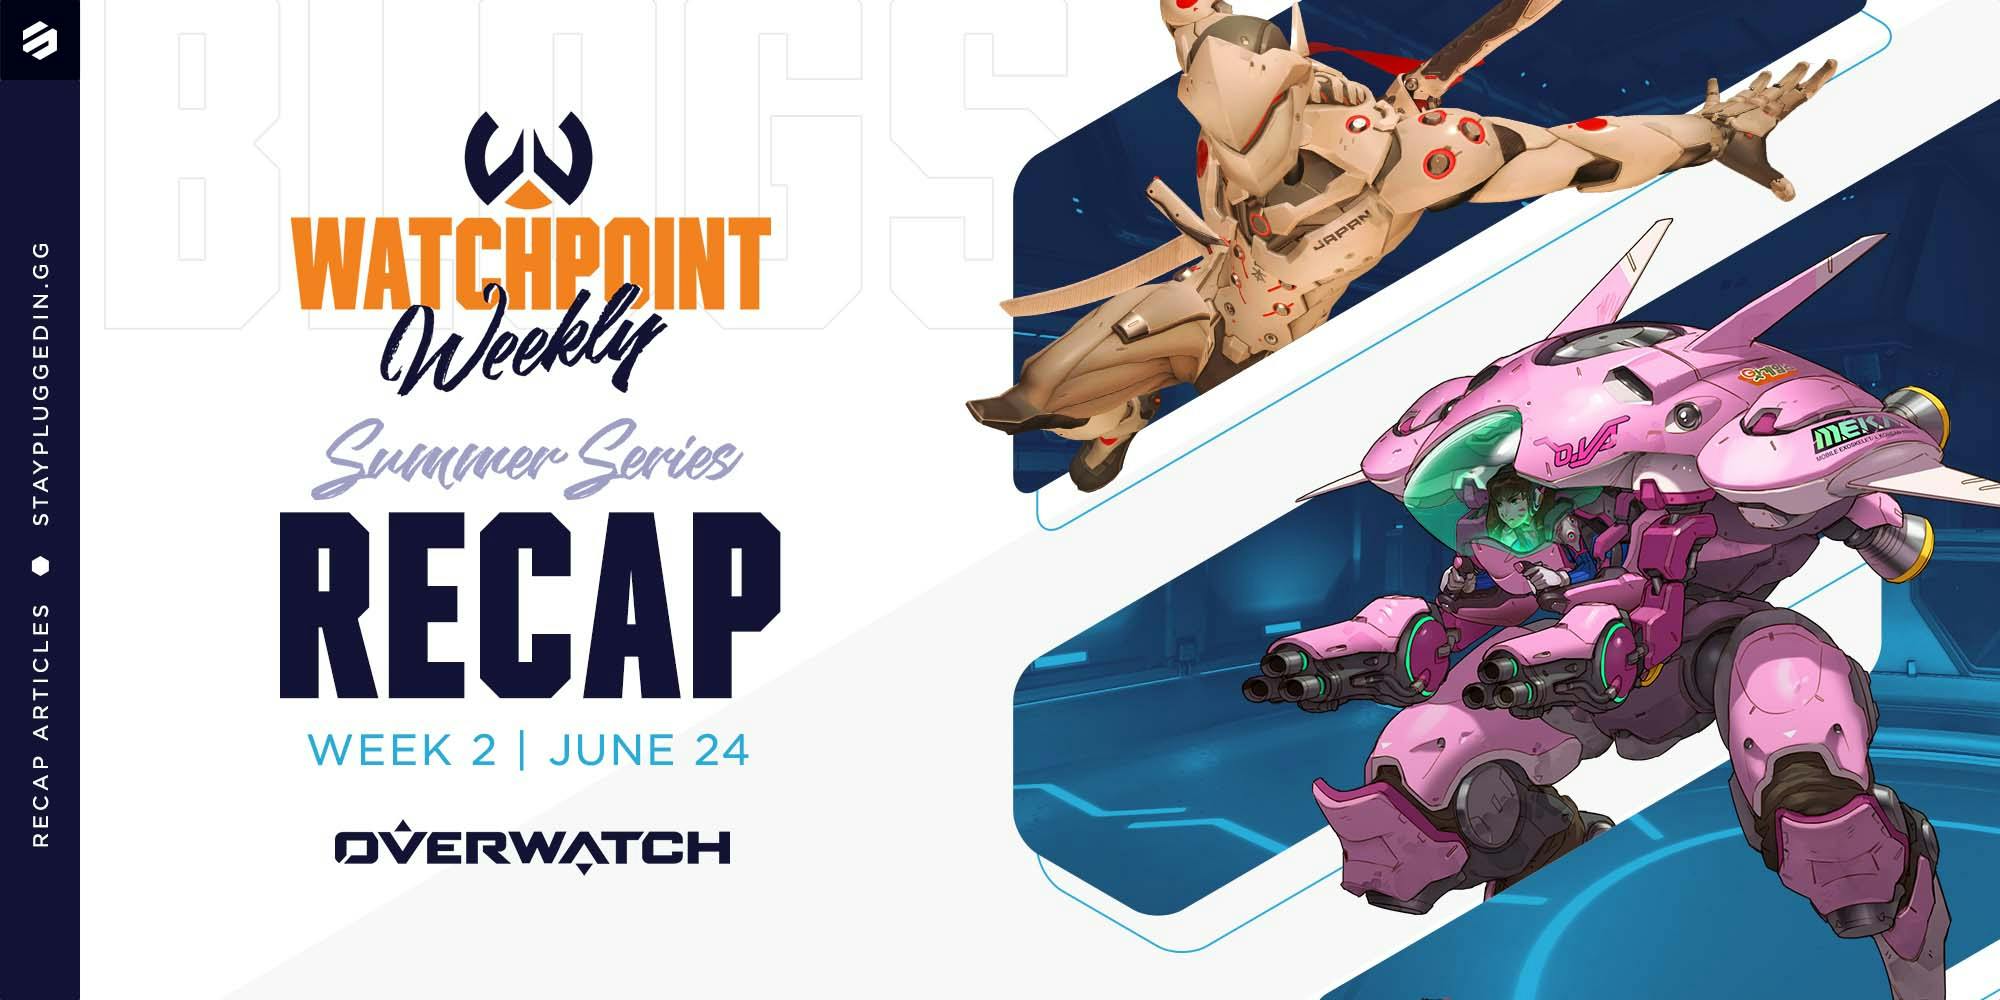 Watchpoint Weekly | Summer Series Week 2 Recap